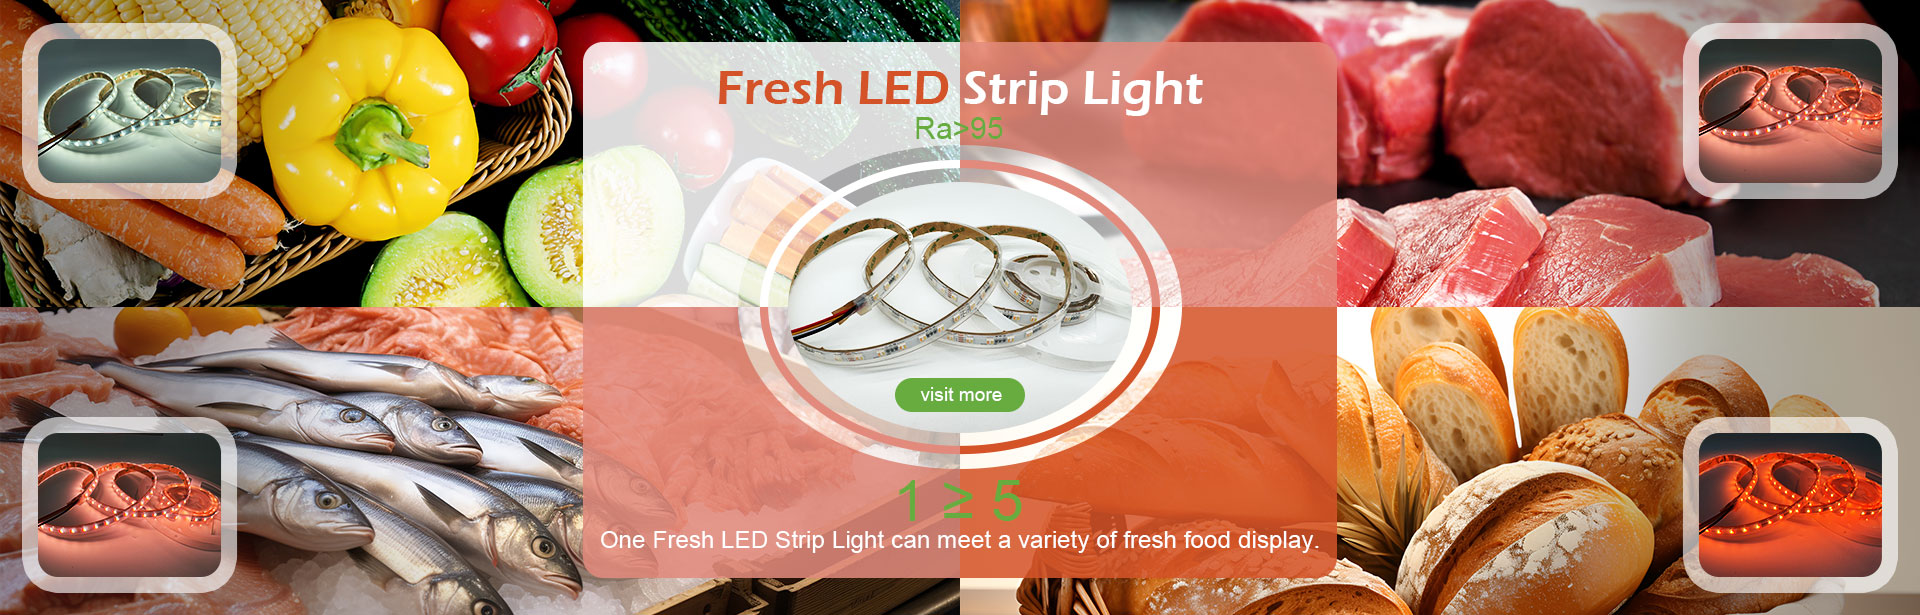 Fresh LED Strip